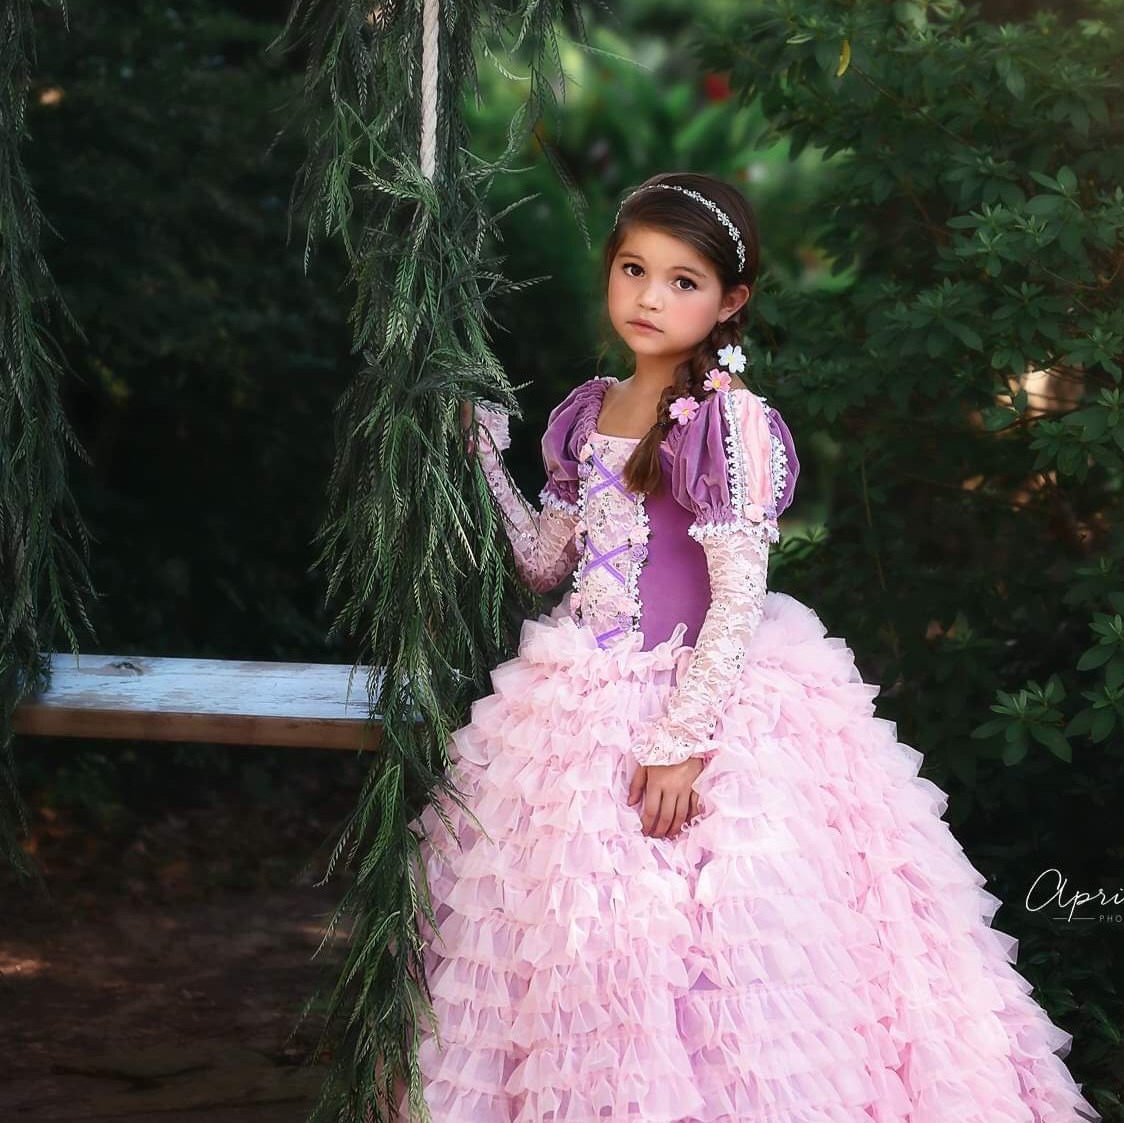 Custom Snow White Costume or Dress for Girls, Toddler, Infant, or